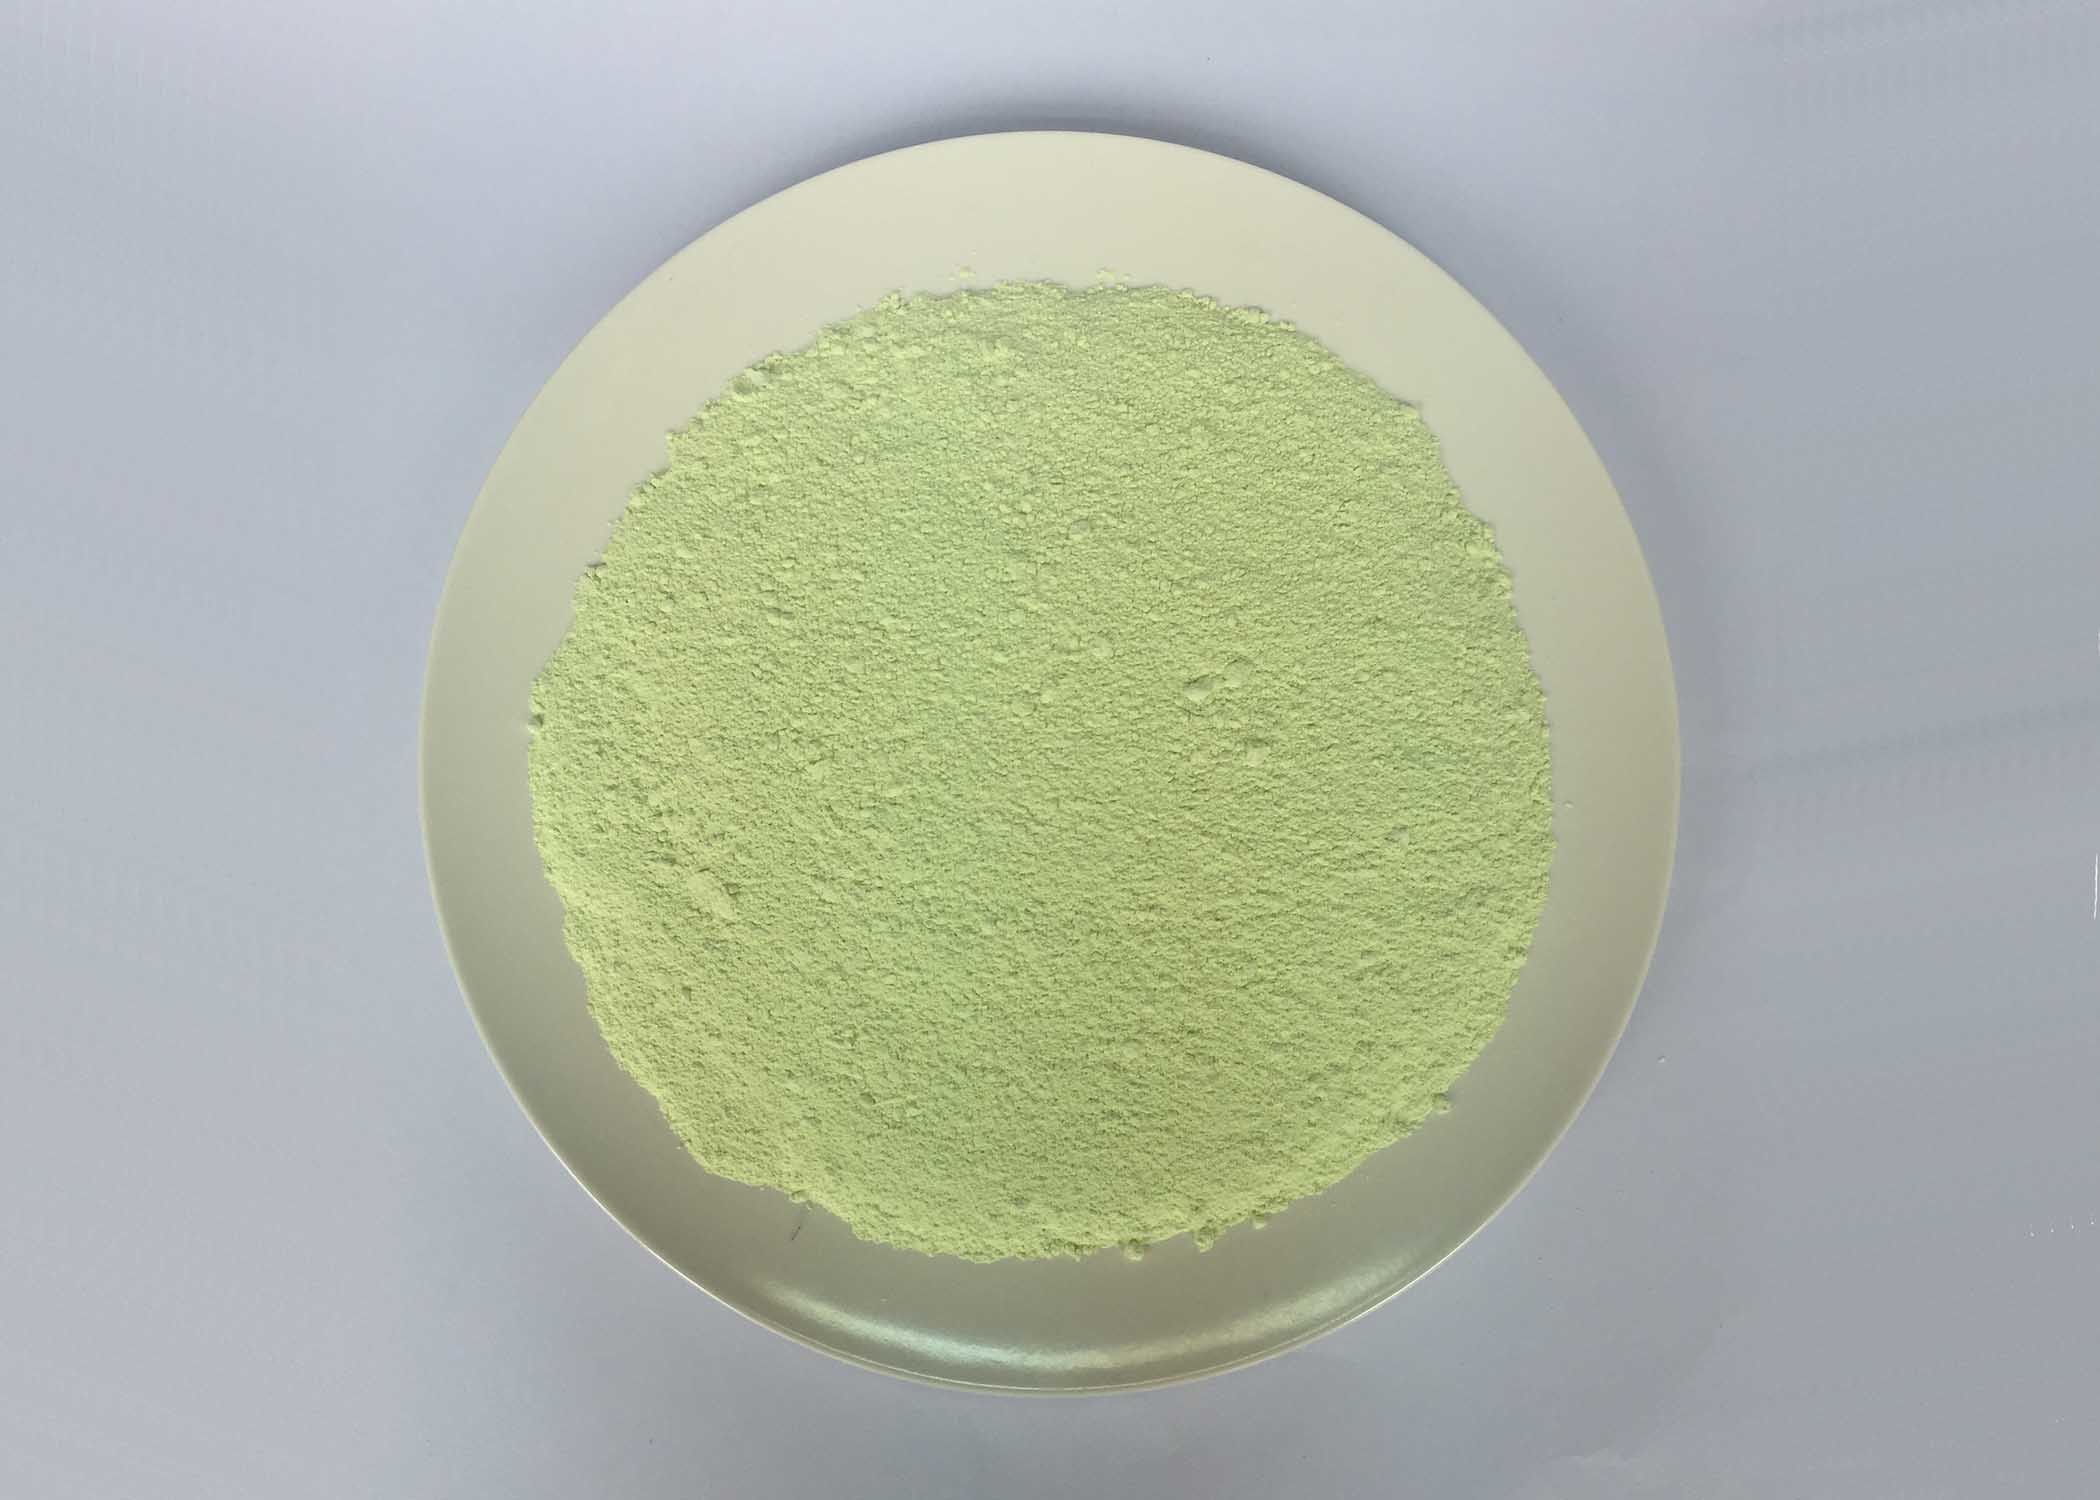 Categoría alimenticia del polvo de la melamina verde clara del color que moldea de alta calidad